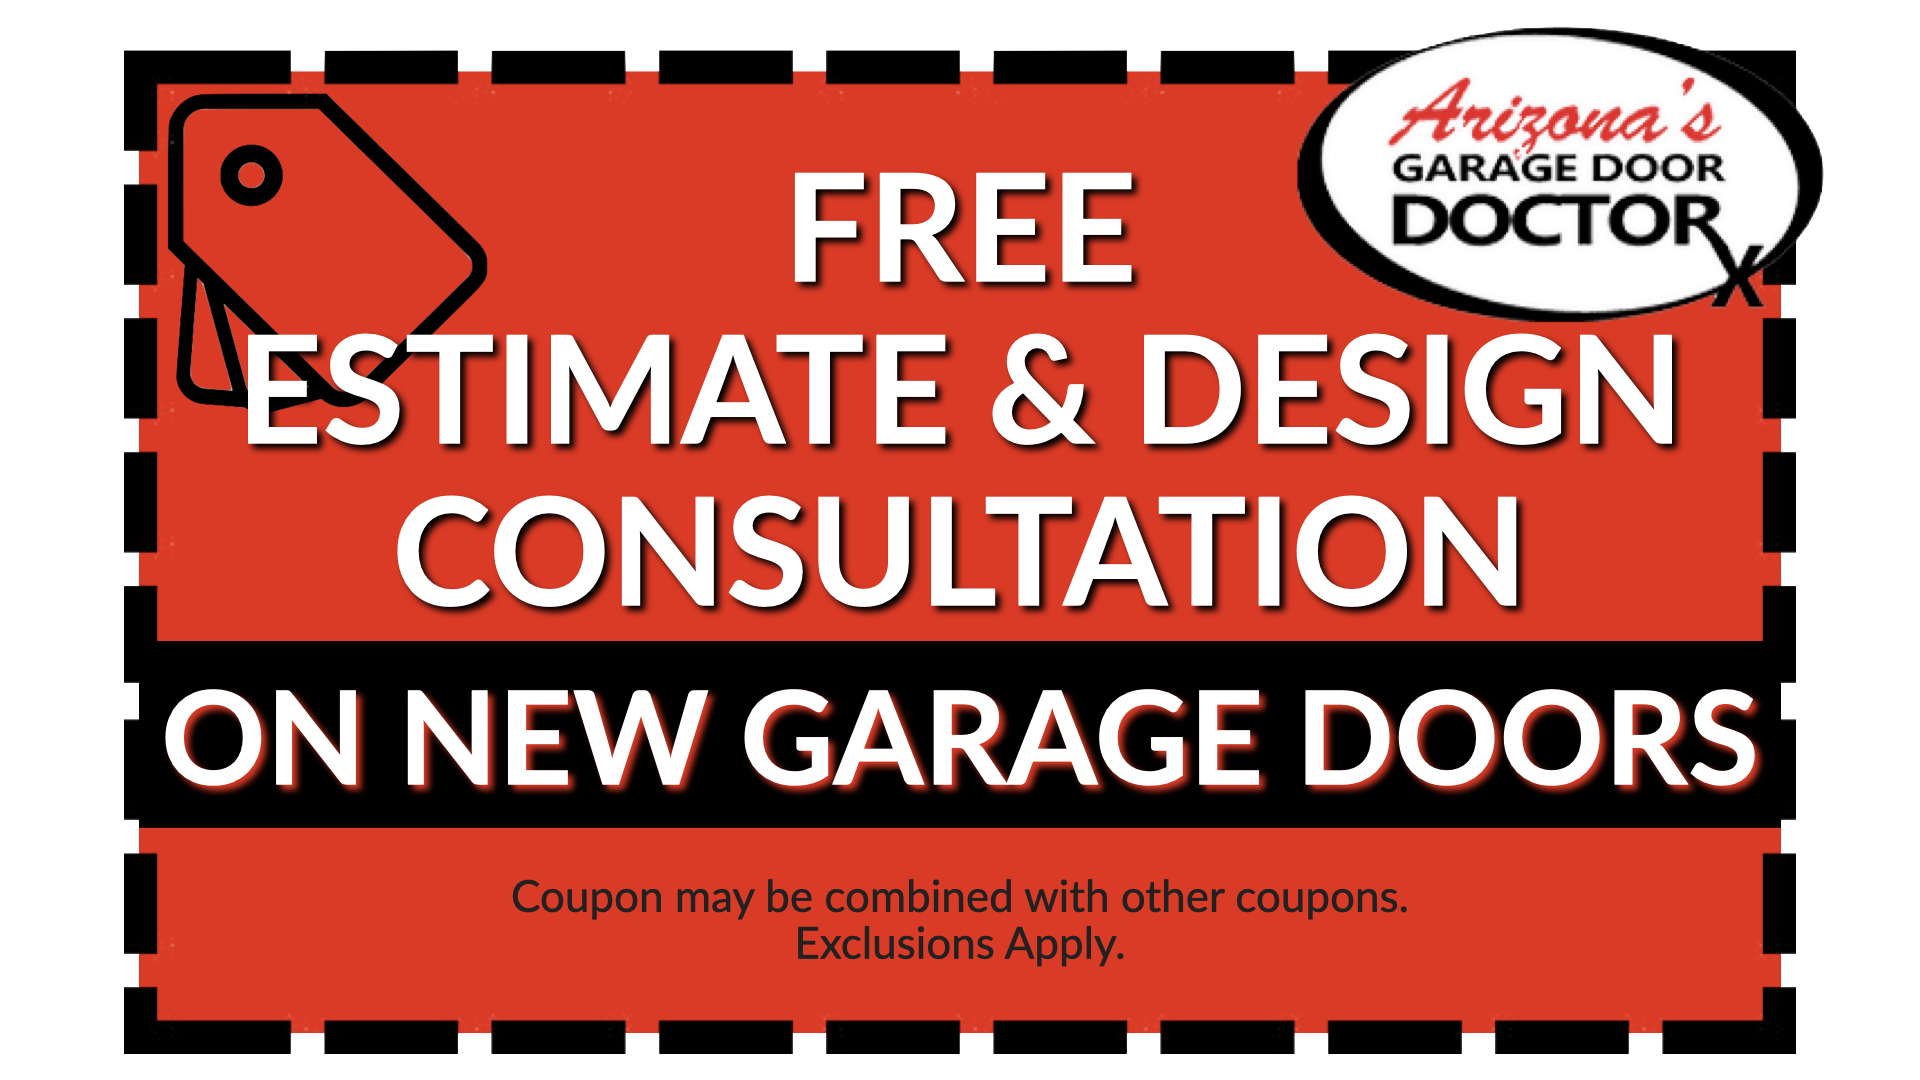 arizona's garage door doctor coupon FREE ESTIMATE & DESIGN CONSULTATION ON NEW GARAGE DOORS